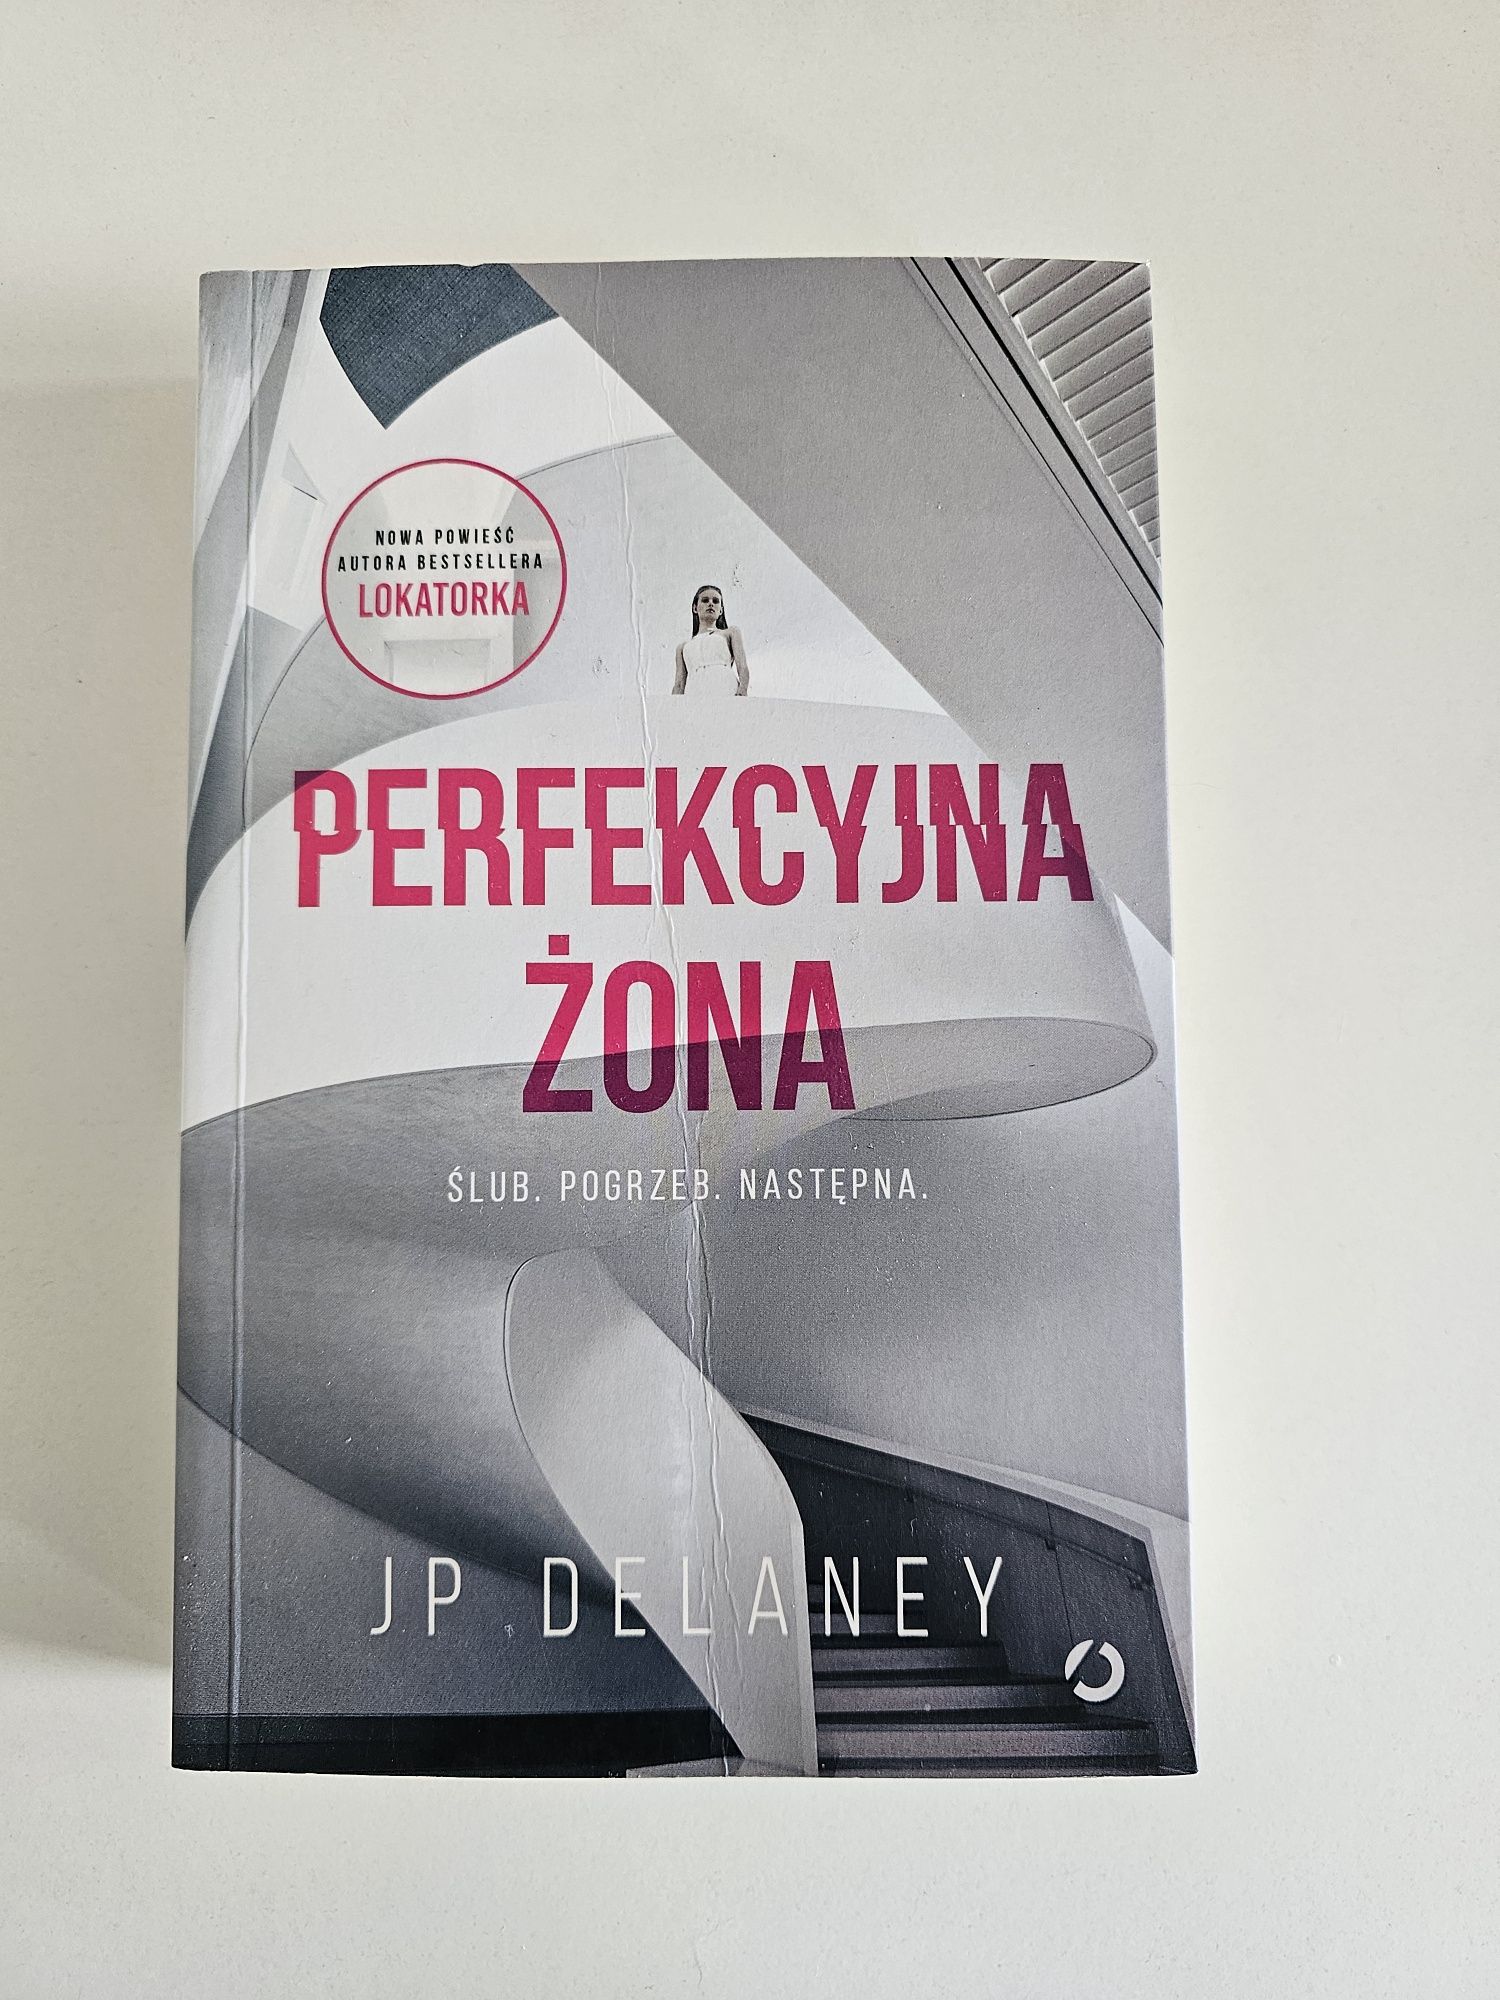 JP Delaney "Perfekcyjna Żona" za 15 zł!